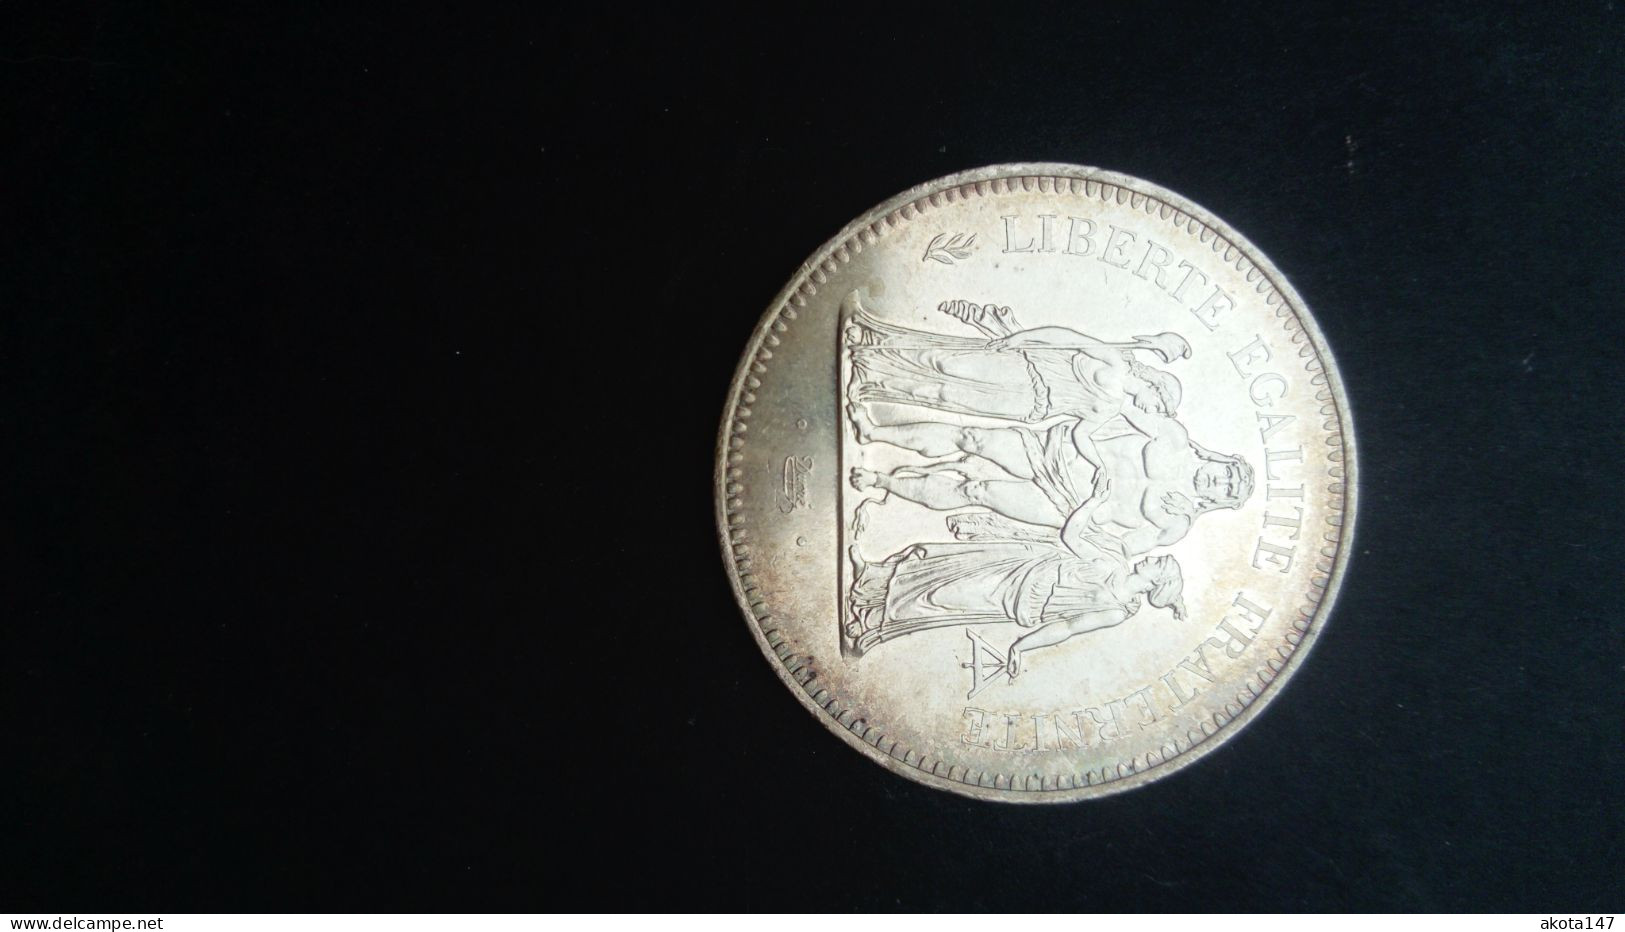 Lot de 4 pièces argent : trois 50 francs Hercule 1977 et une 10 francs Hercule 1966